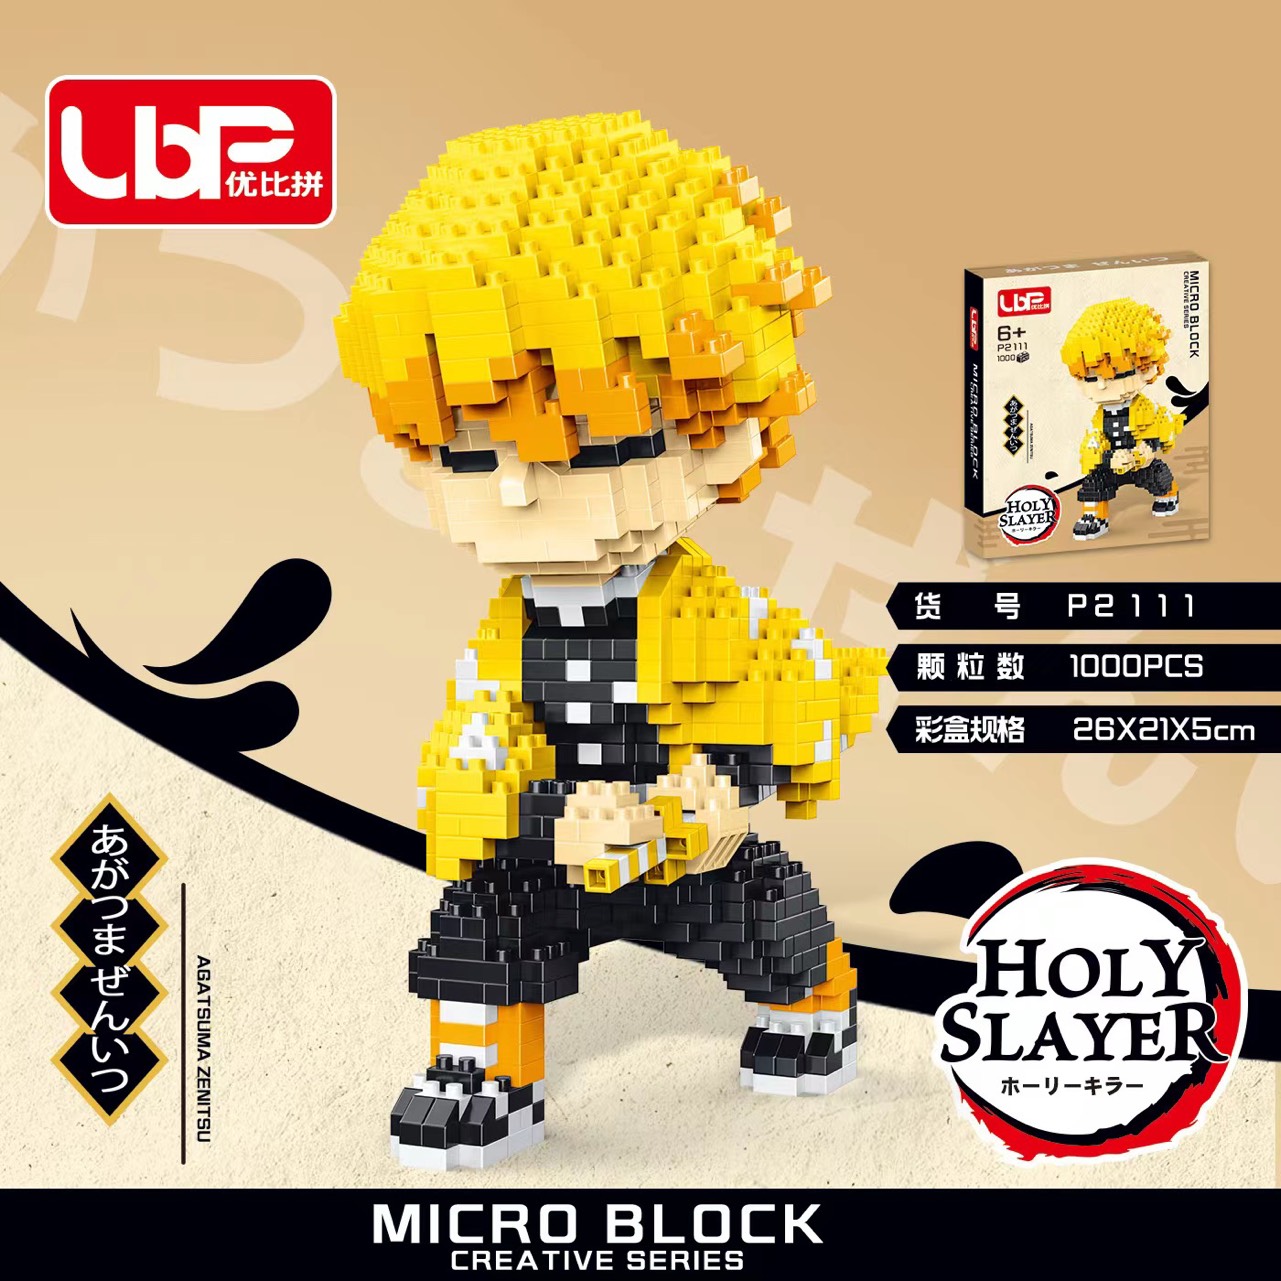 Lego nhân vật Kimetsu No Yaiba  Lắp Ráp lego nhân vật Thanh Gươm Diệt Quỷ Demon Slayer Kimetsu No Yaiba đồ chơi xếp hình lego Demon Slayer.